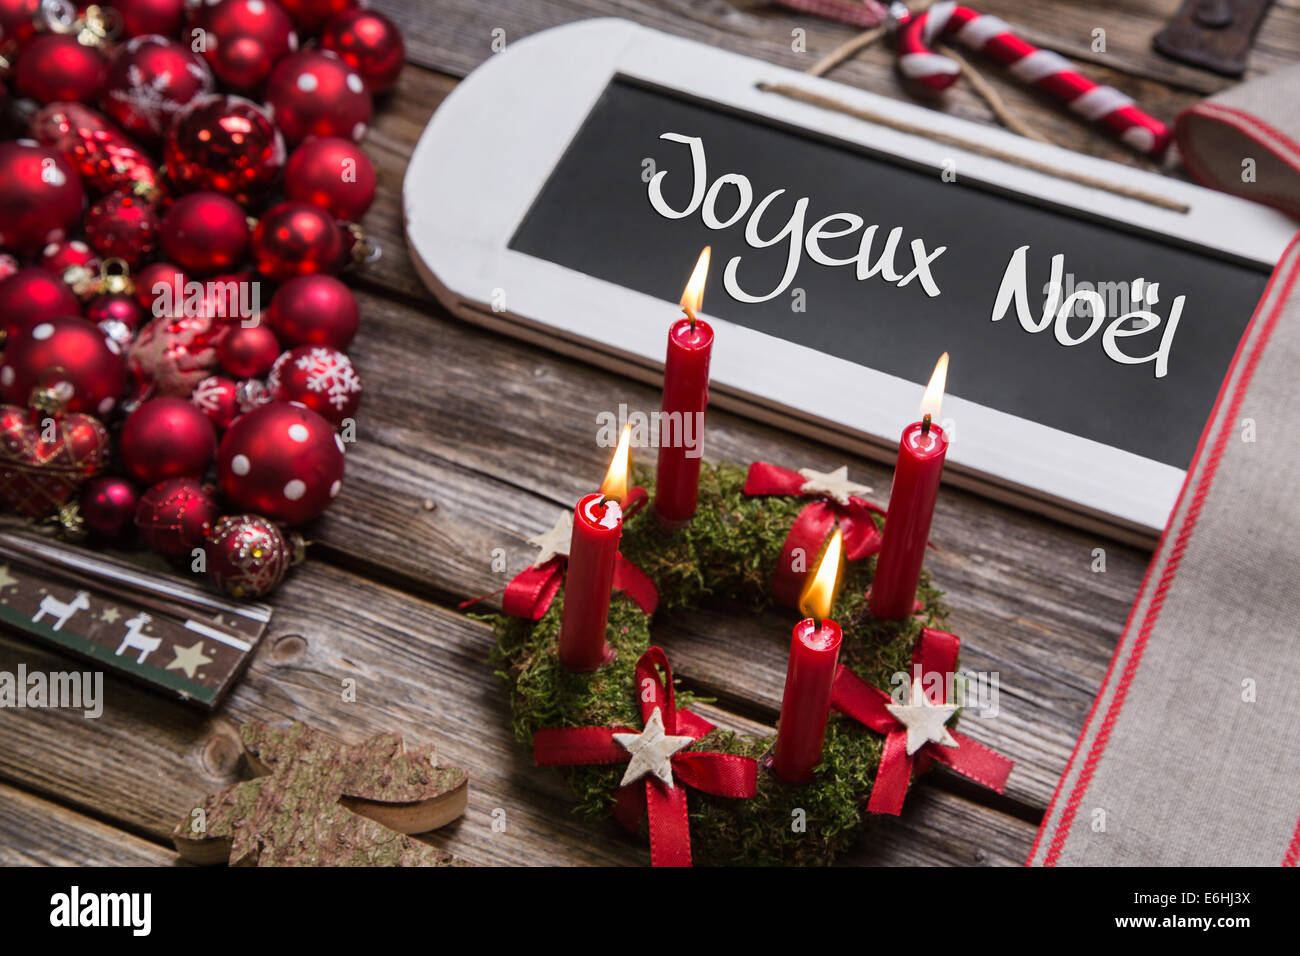 Frohe Weihnachten Grusskarte mit vier roten Kerzen und französischer Text: "Joyeux Noel". Stockfoto